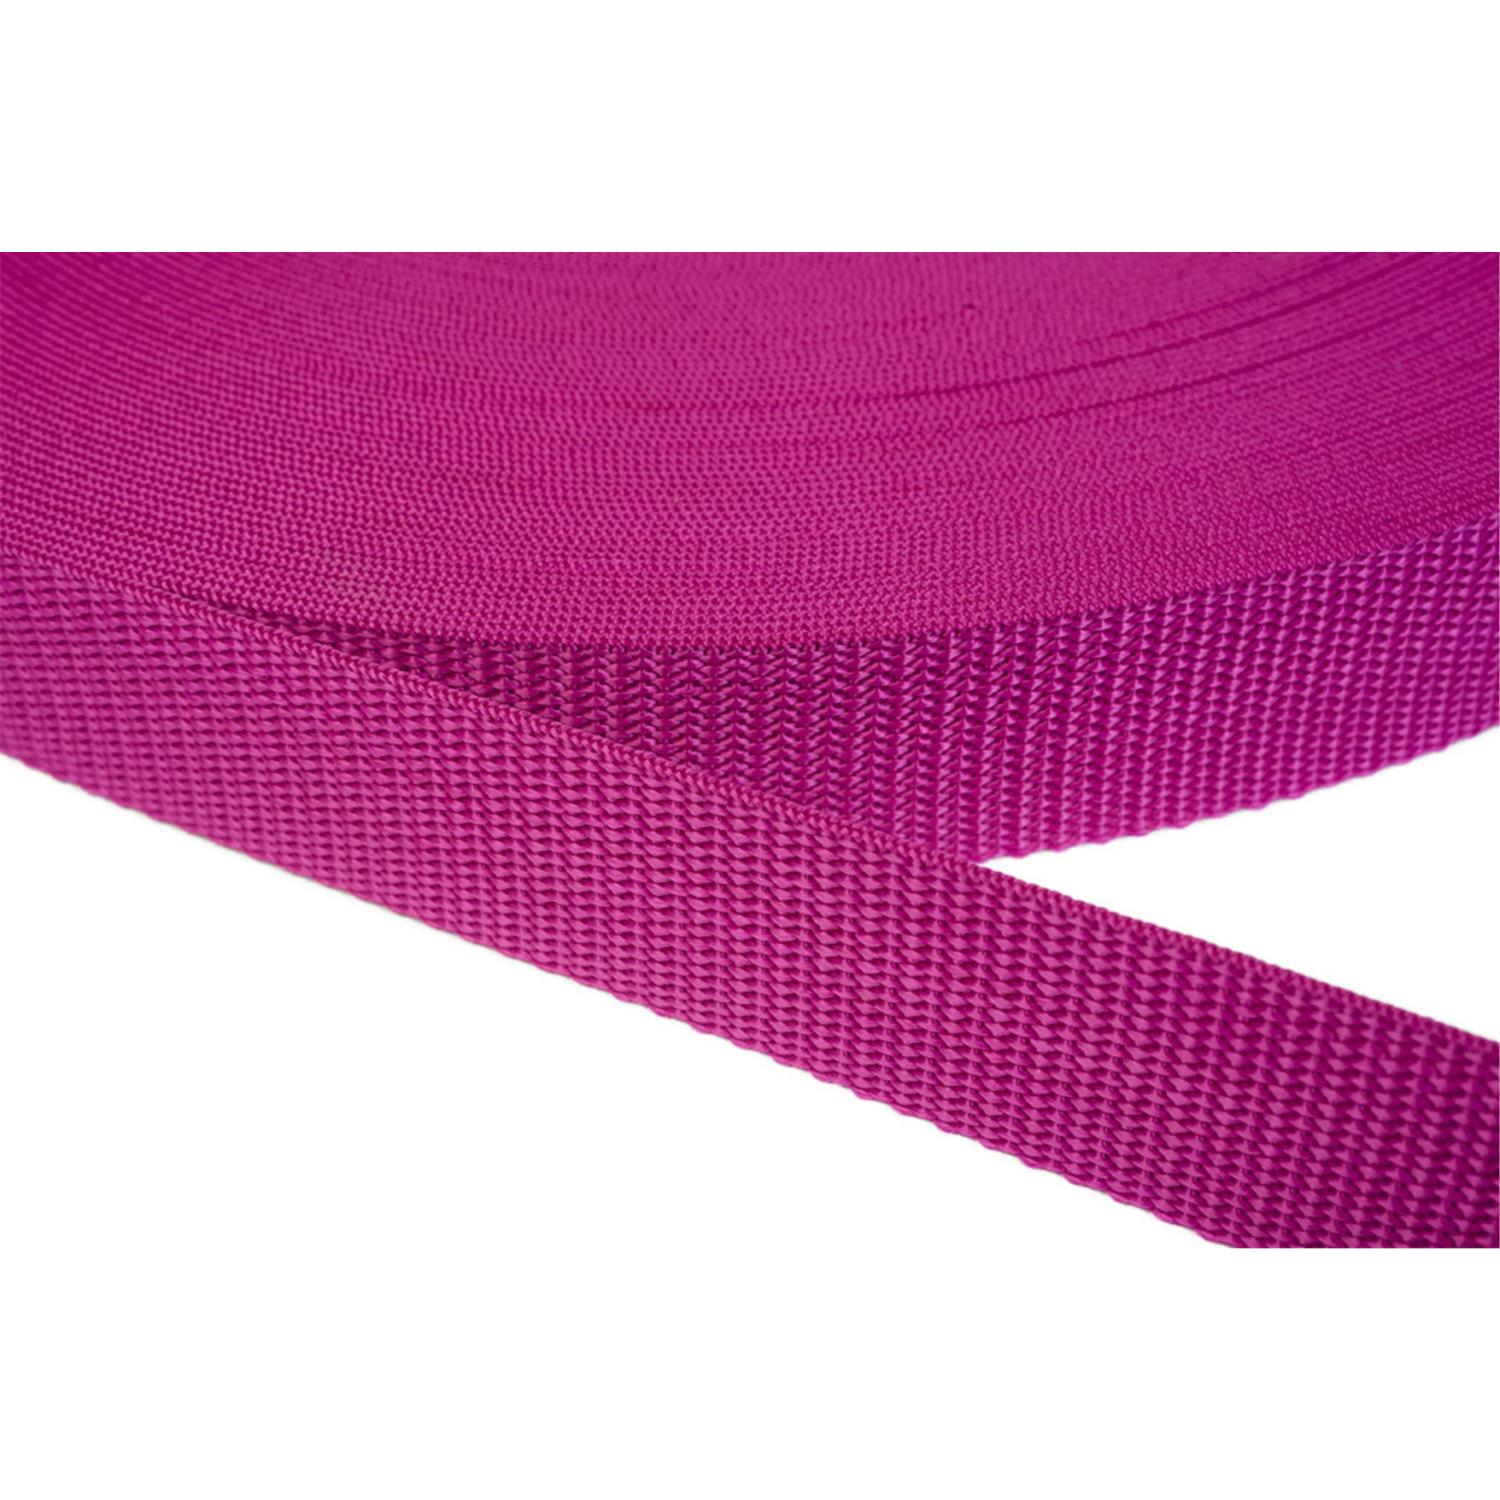 Gurtband 30mm breit aus Polypropylen in 41 Farben 17 - dunkles magenta 50 Meter